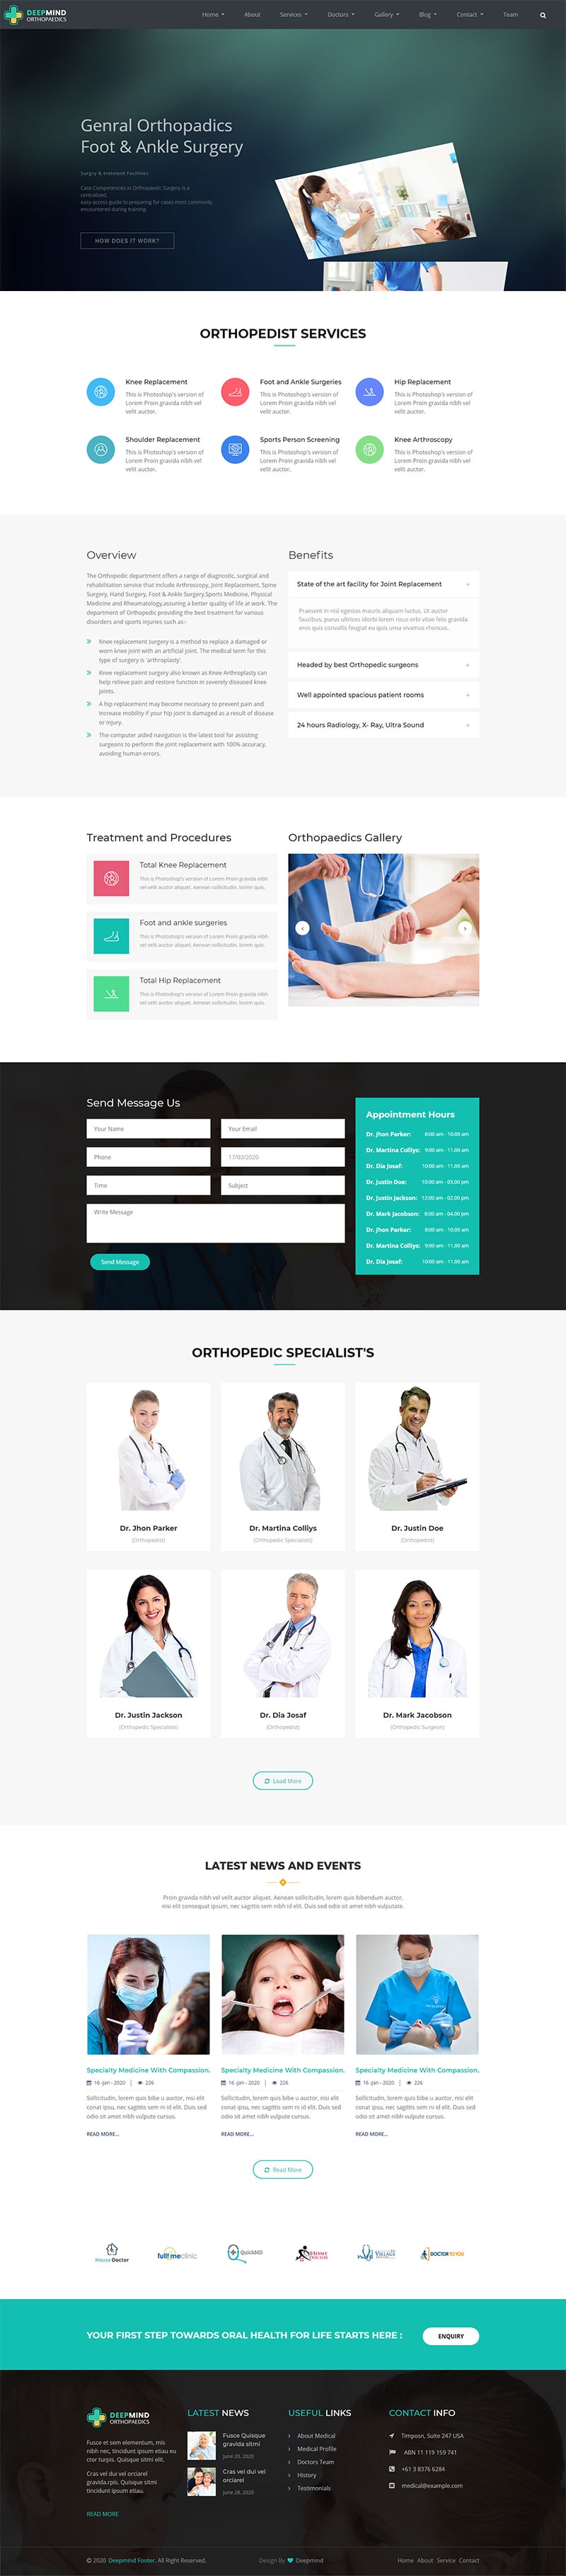 orthopadics home Page